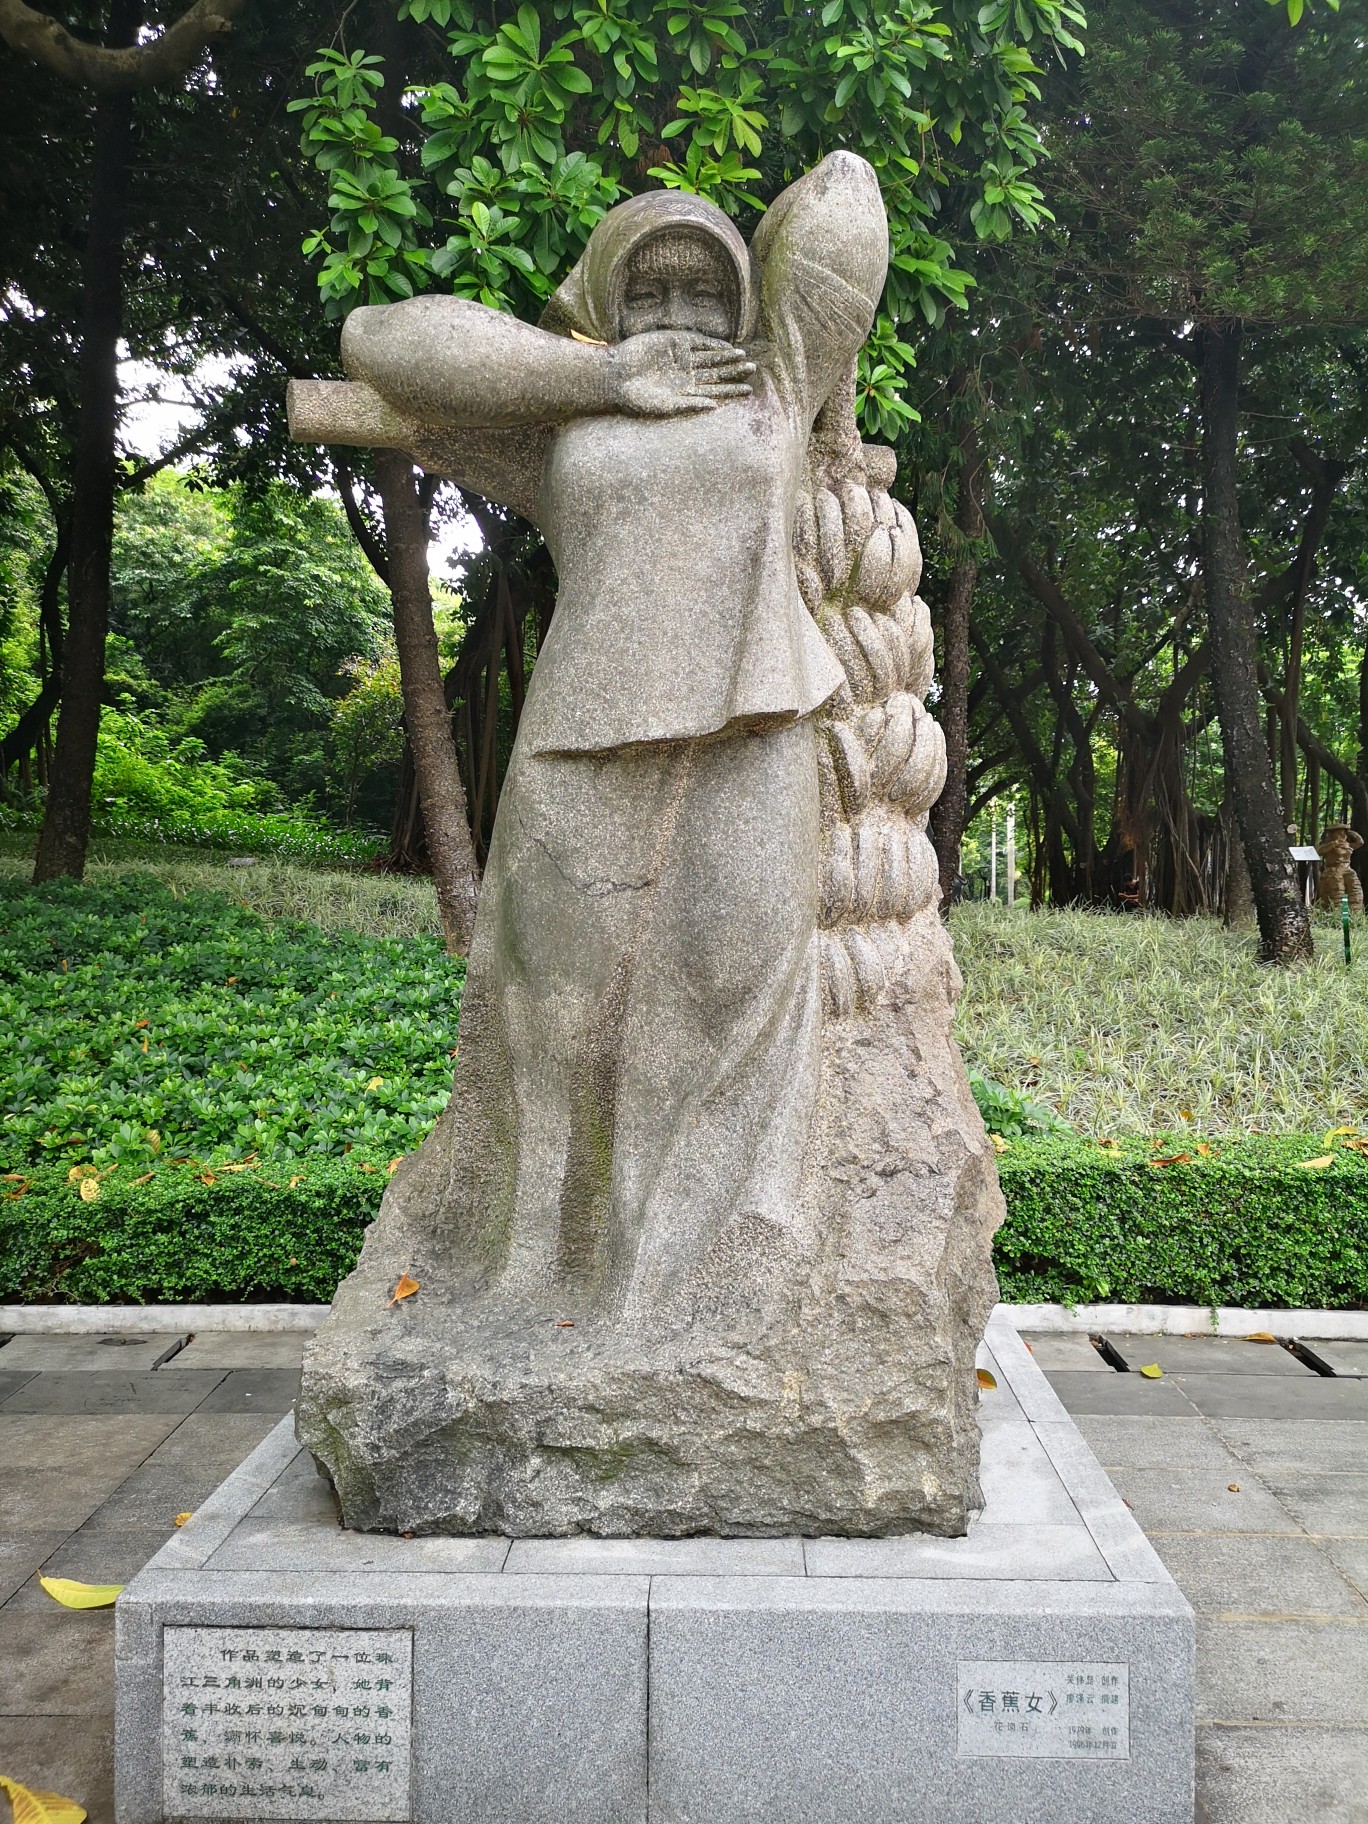 雕塑公园-以雕塑为主题，与园林结合公园。